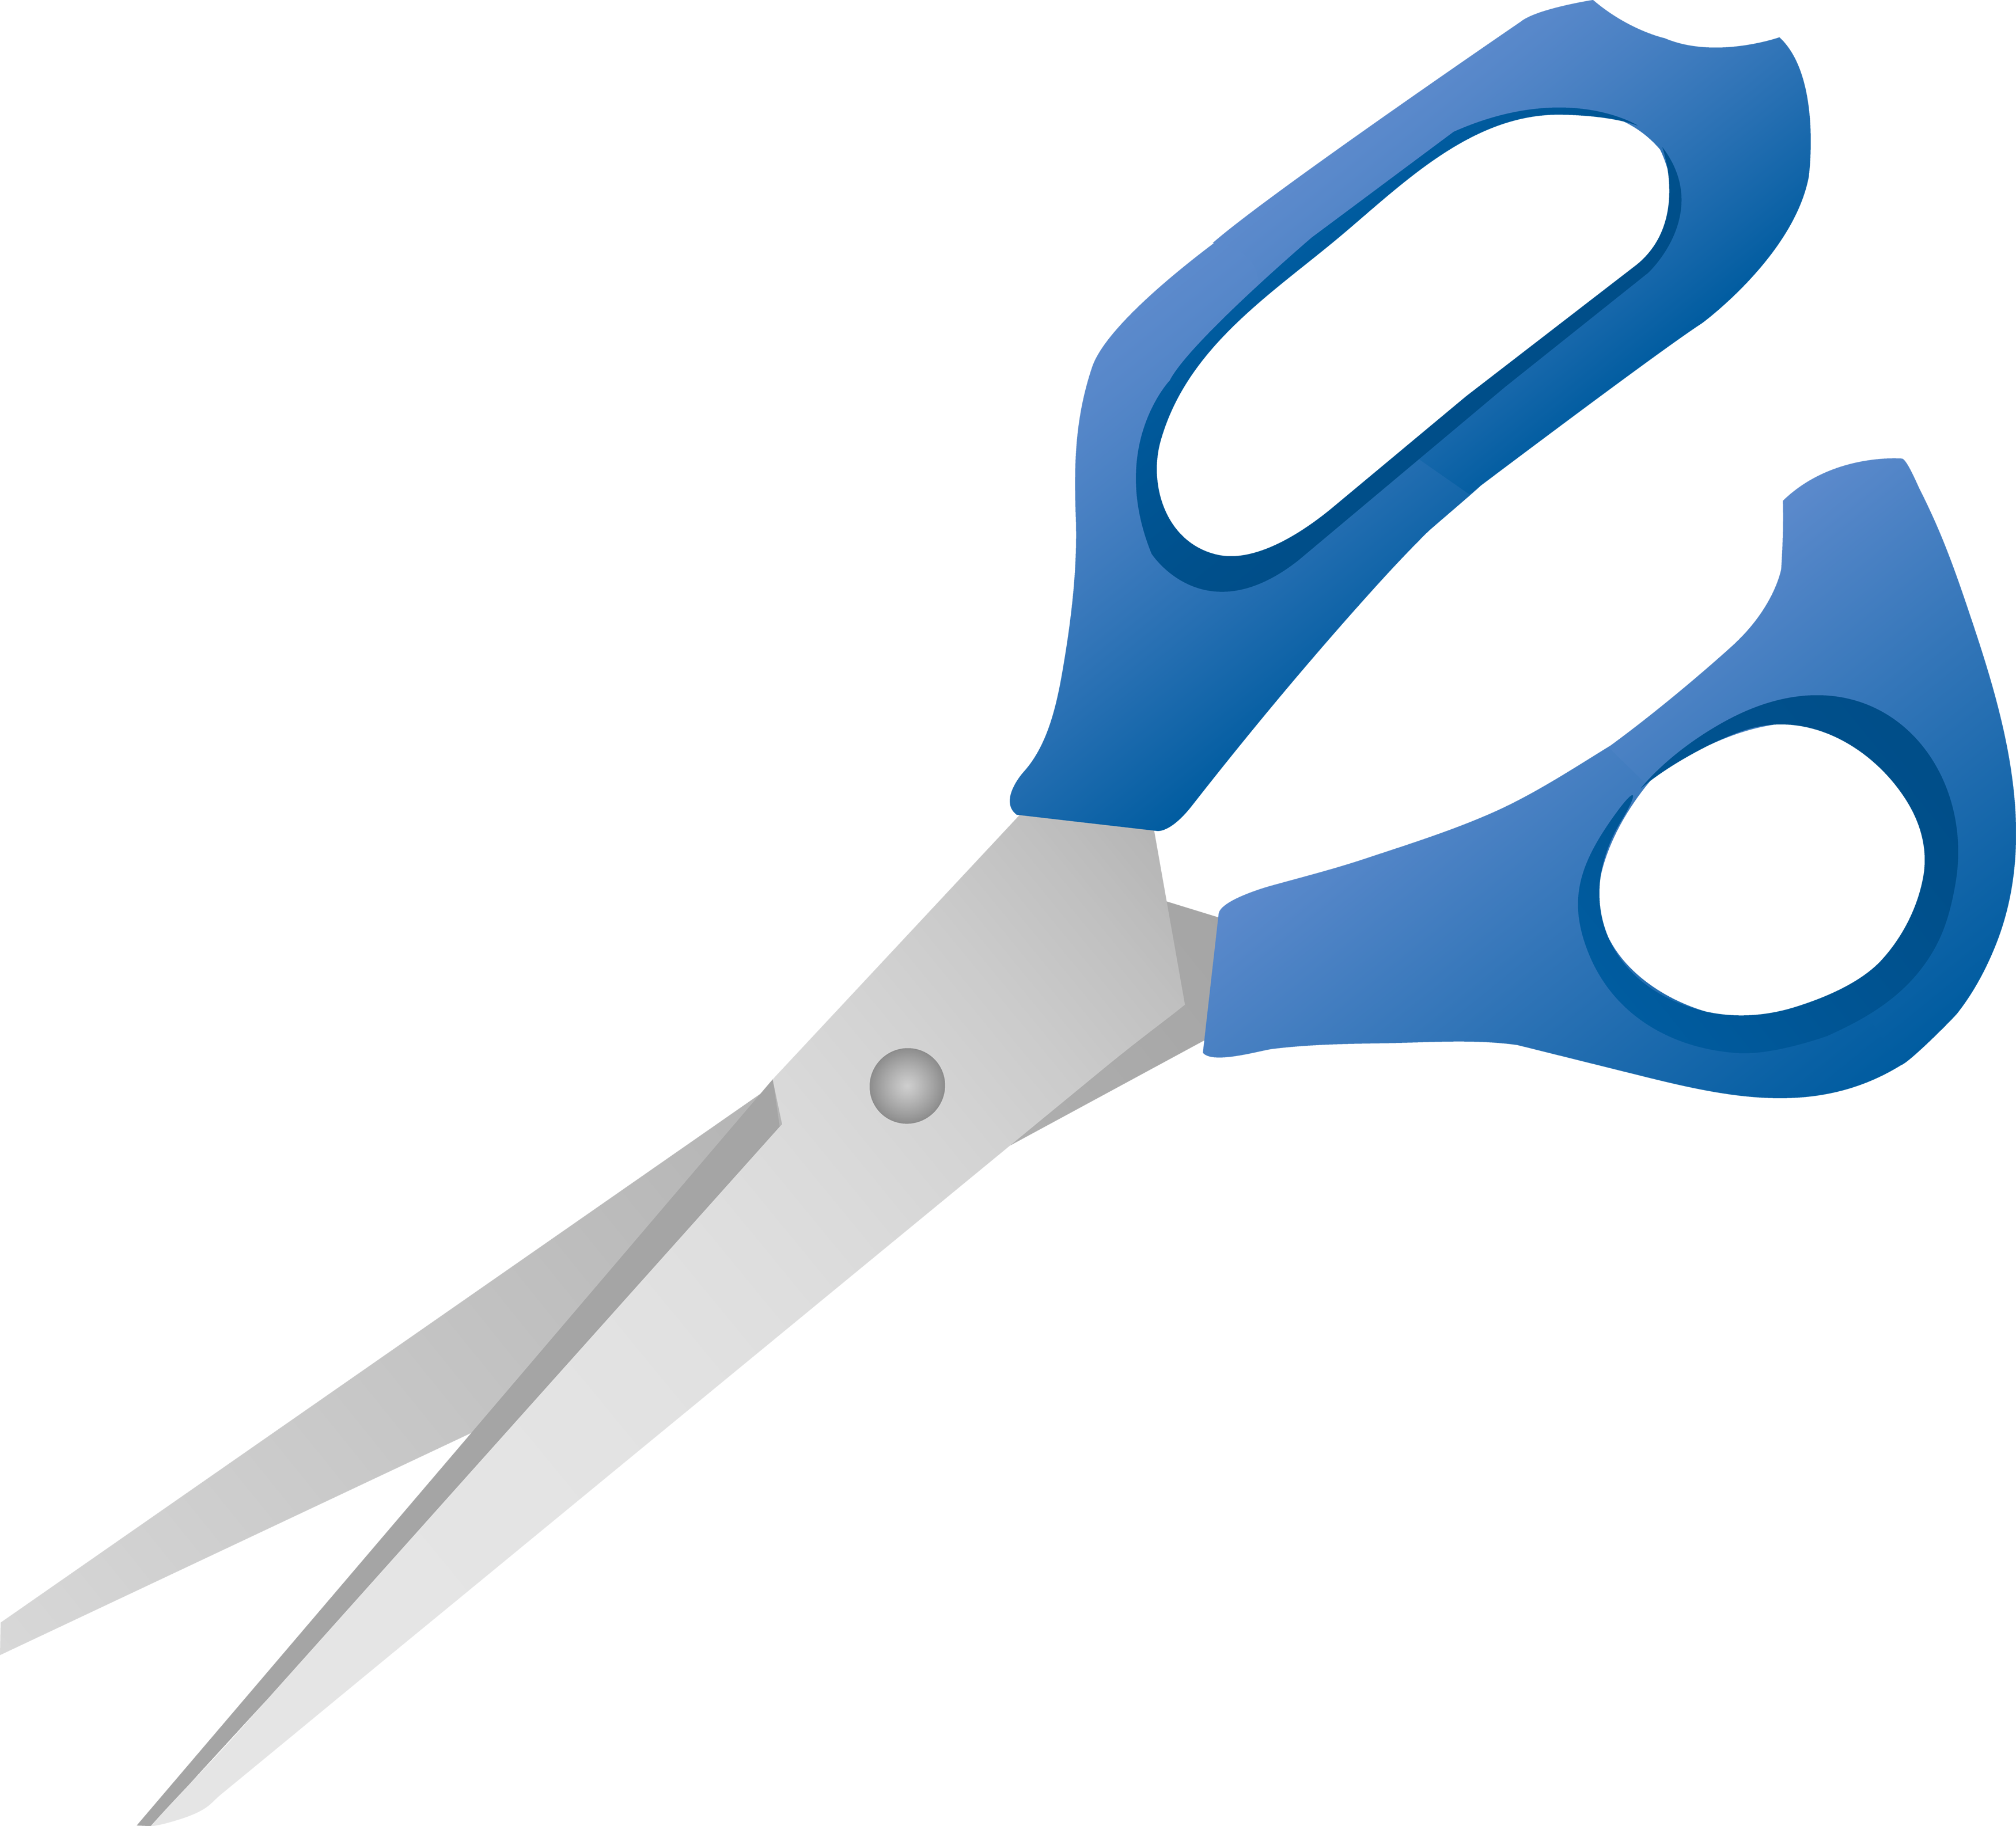 a pair of scissors, Scissors,